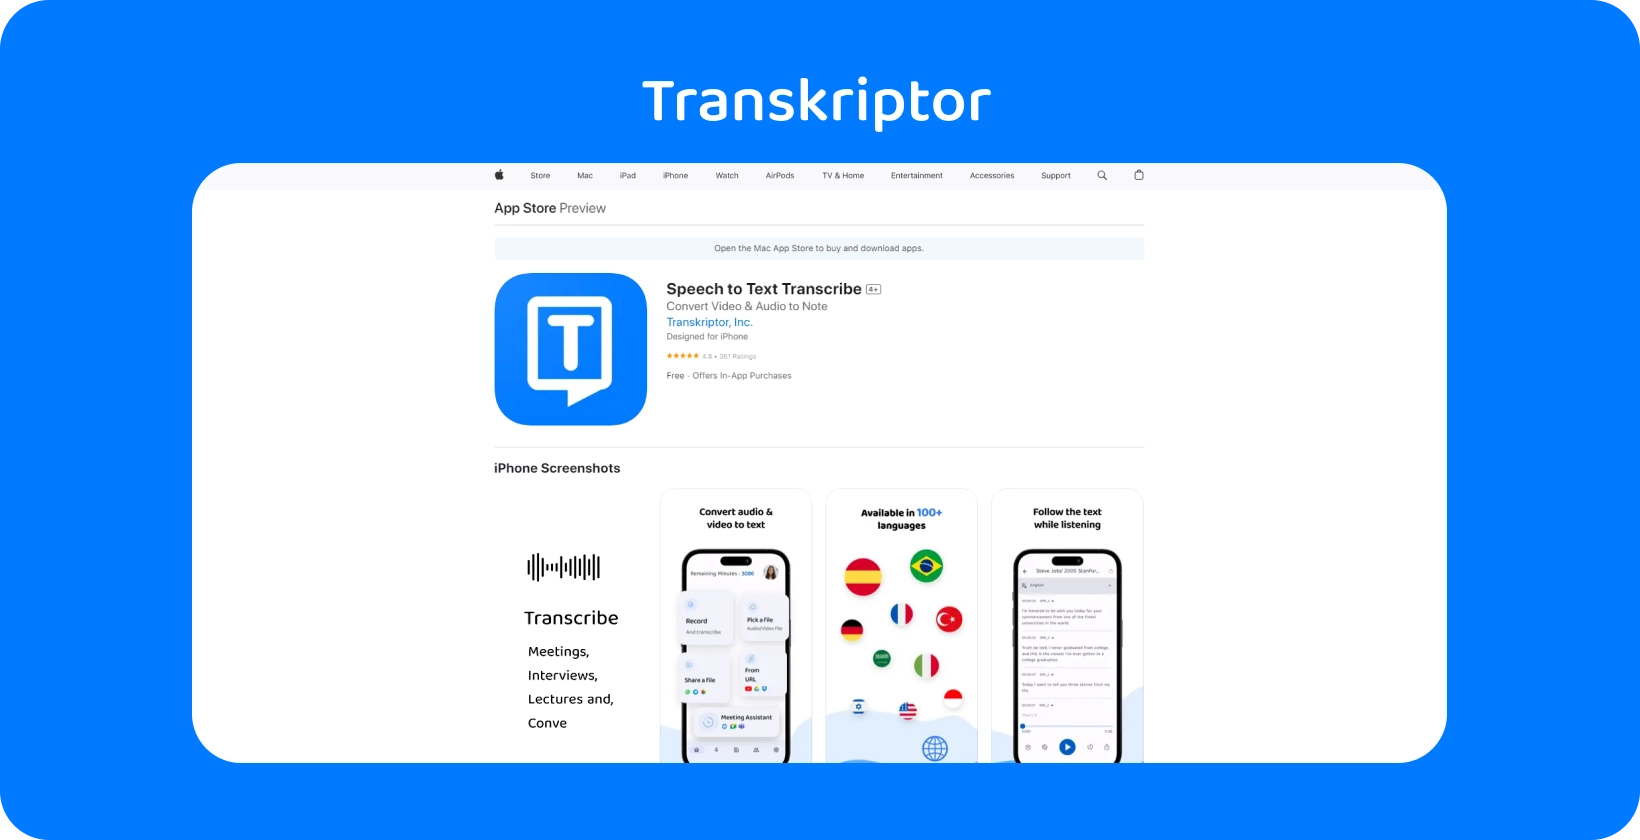 Transkriptor aplicație prezentată pe iPhone, subliniind capacitățile sale de transcriere vorbire-text.